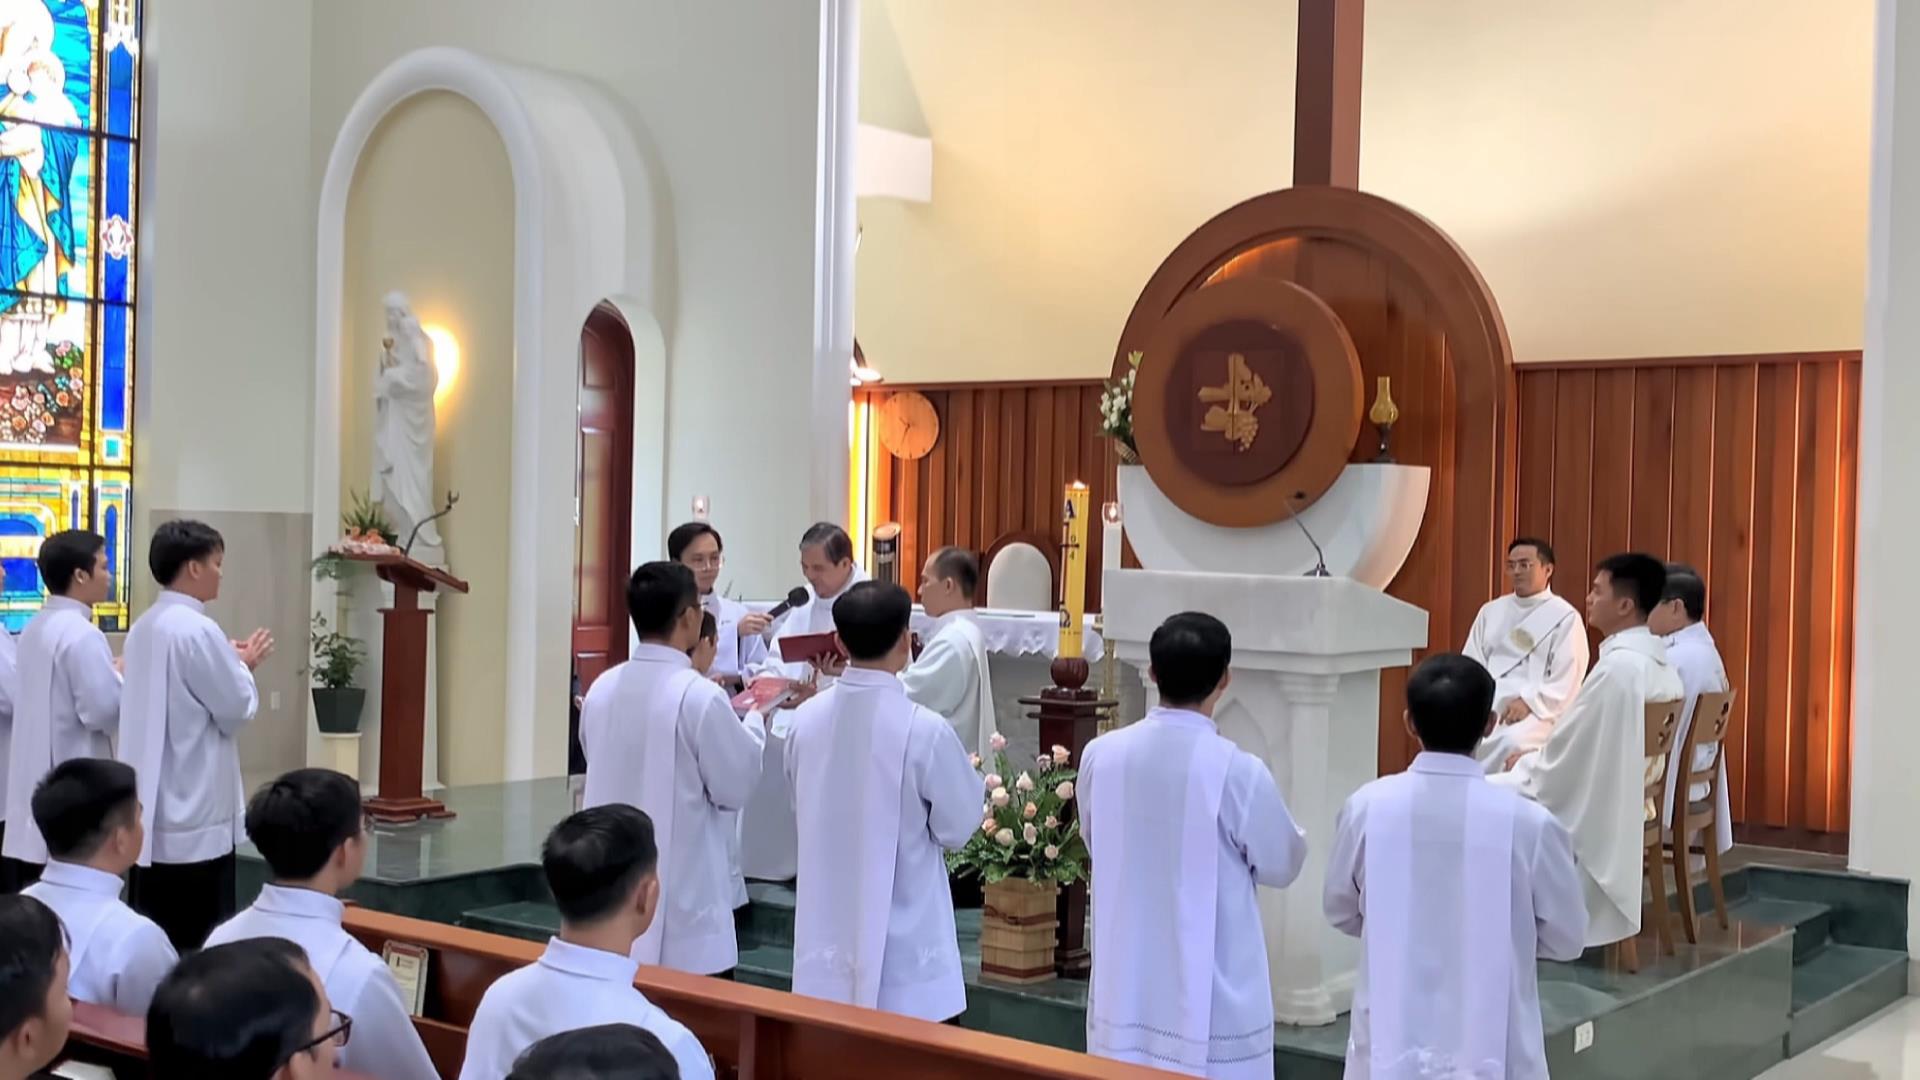 Tỉnh Dòng Thánh Thể Việt Nam Mừng Lễ Đức Mẹ Thánh Thể